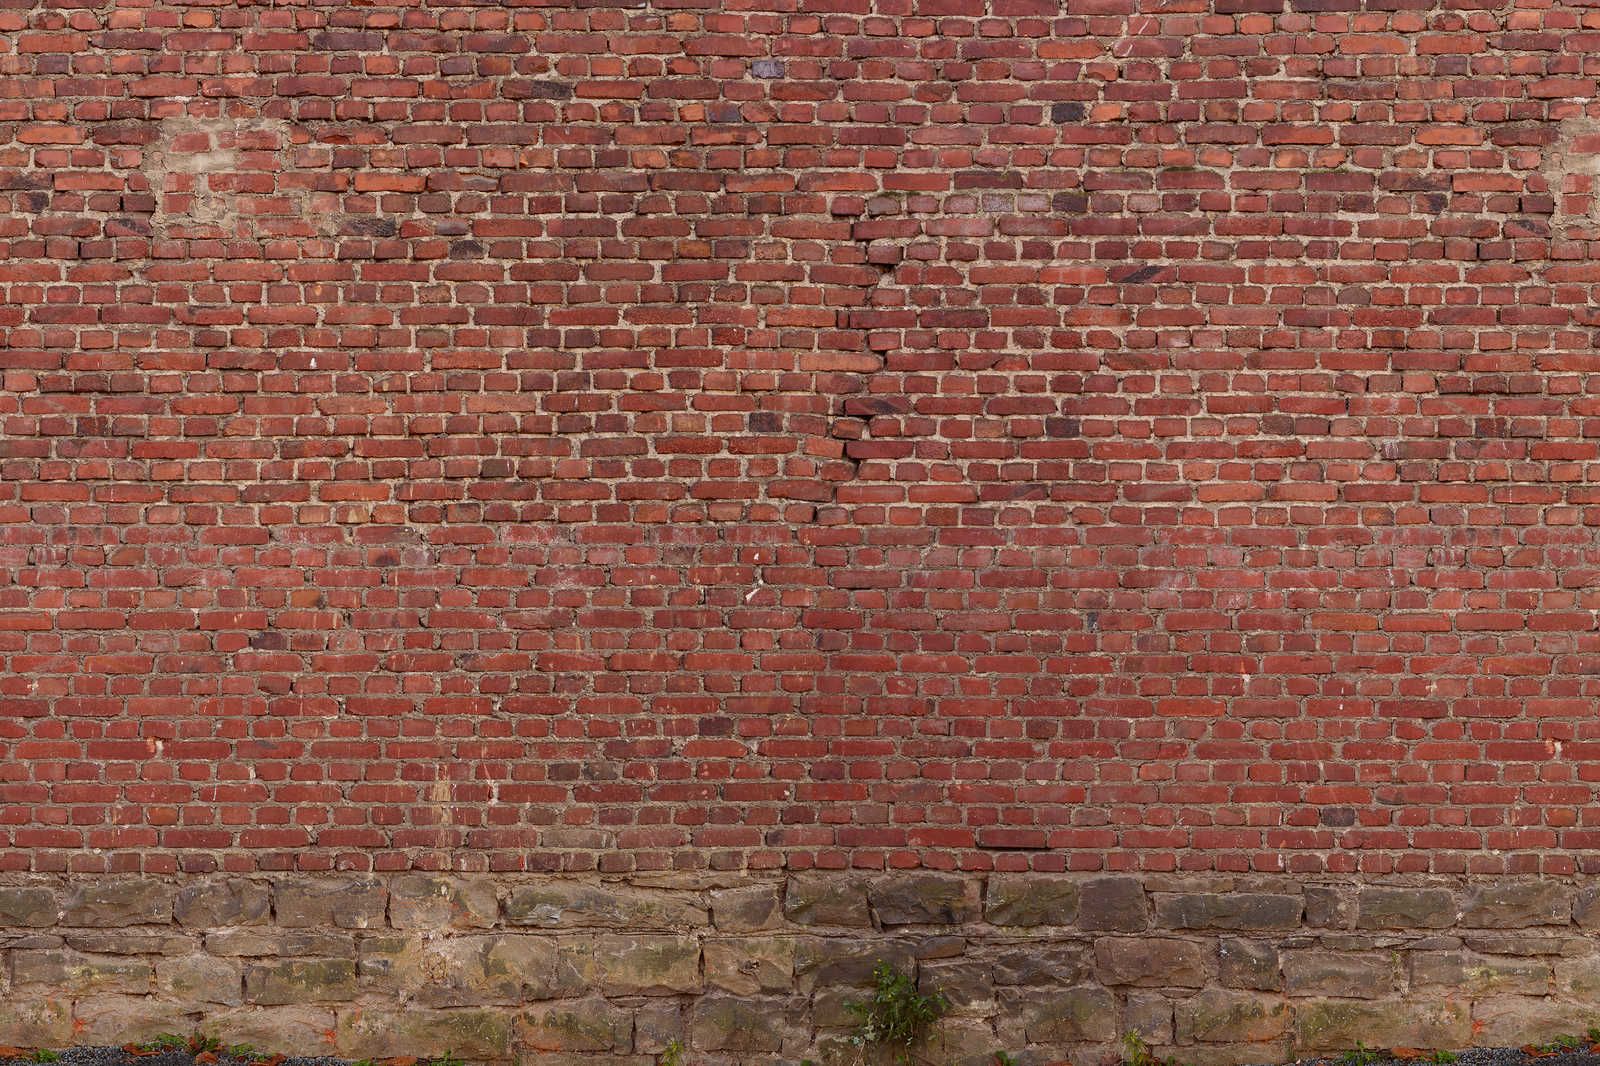             Toile mur de briques rouges - 0,90 m x 0,60 m
        